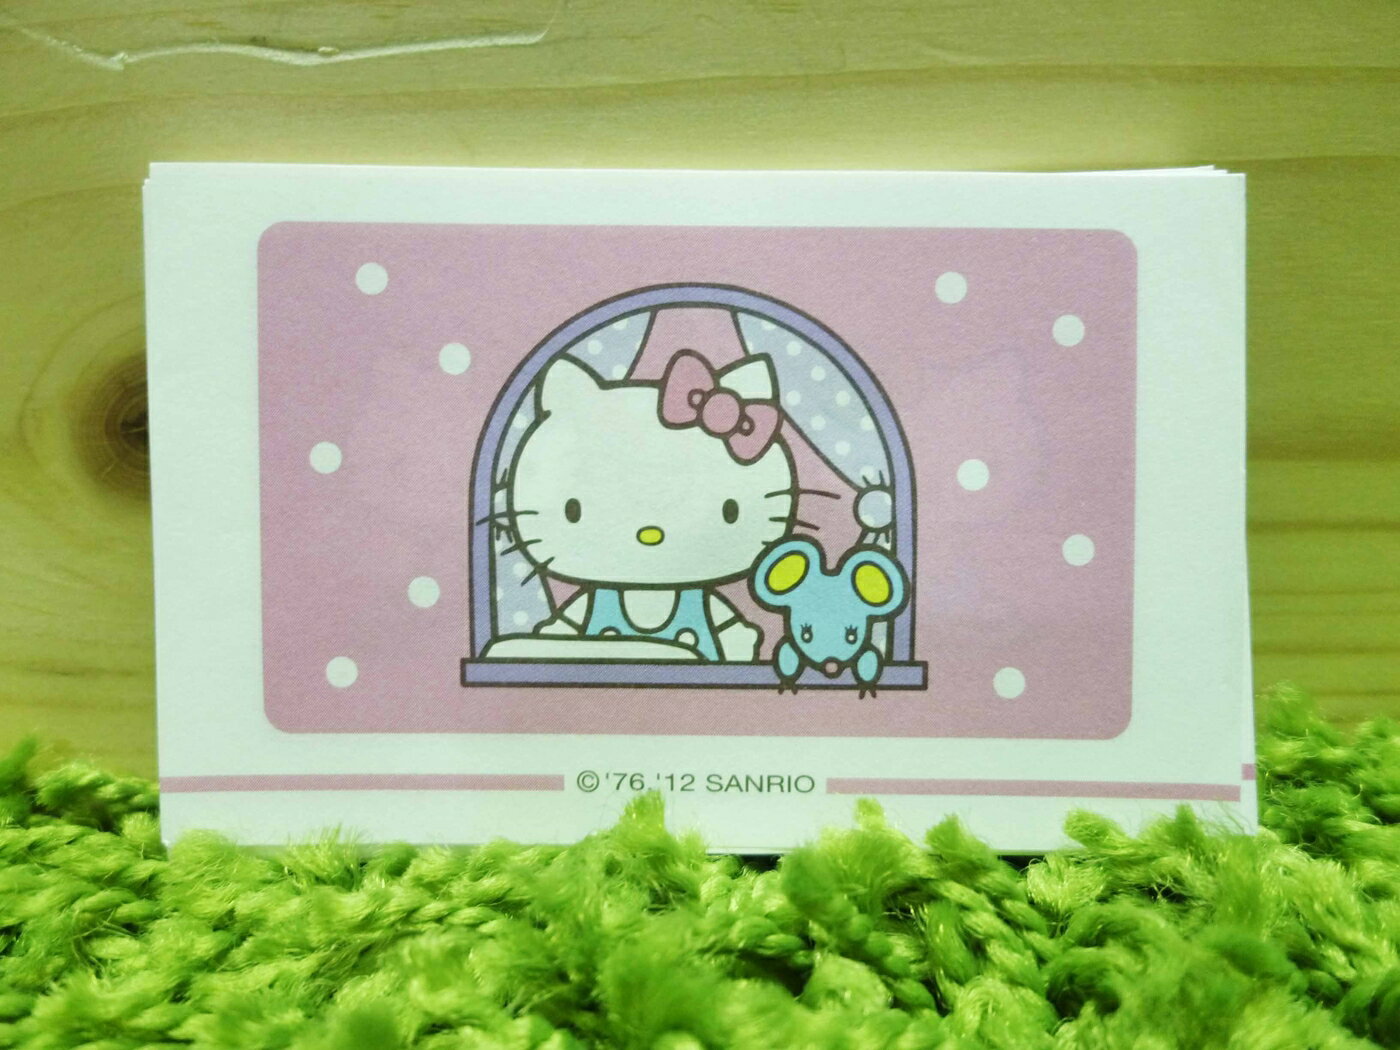 【震撼精品百貨】Hello Kitty 凱蒂貓 便條 老鼠【共1款】 震撼日式精品百貨